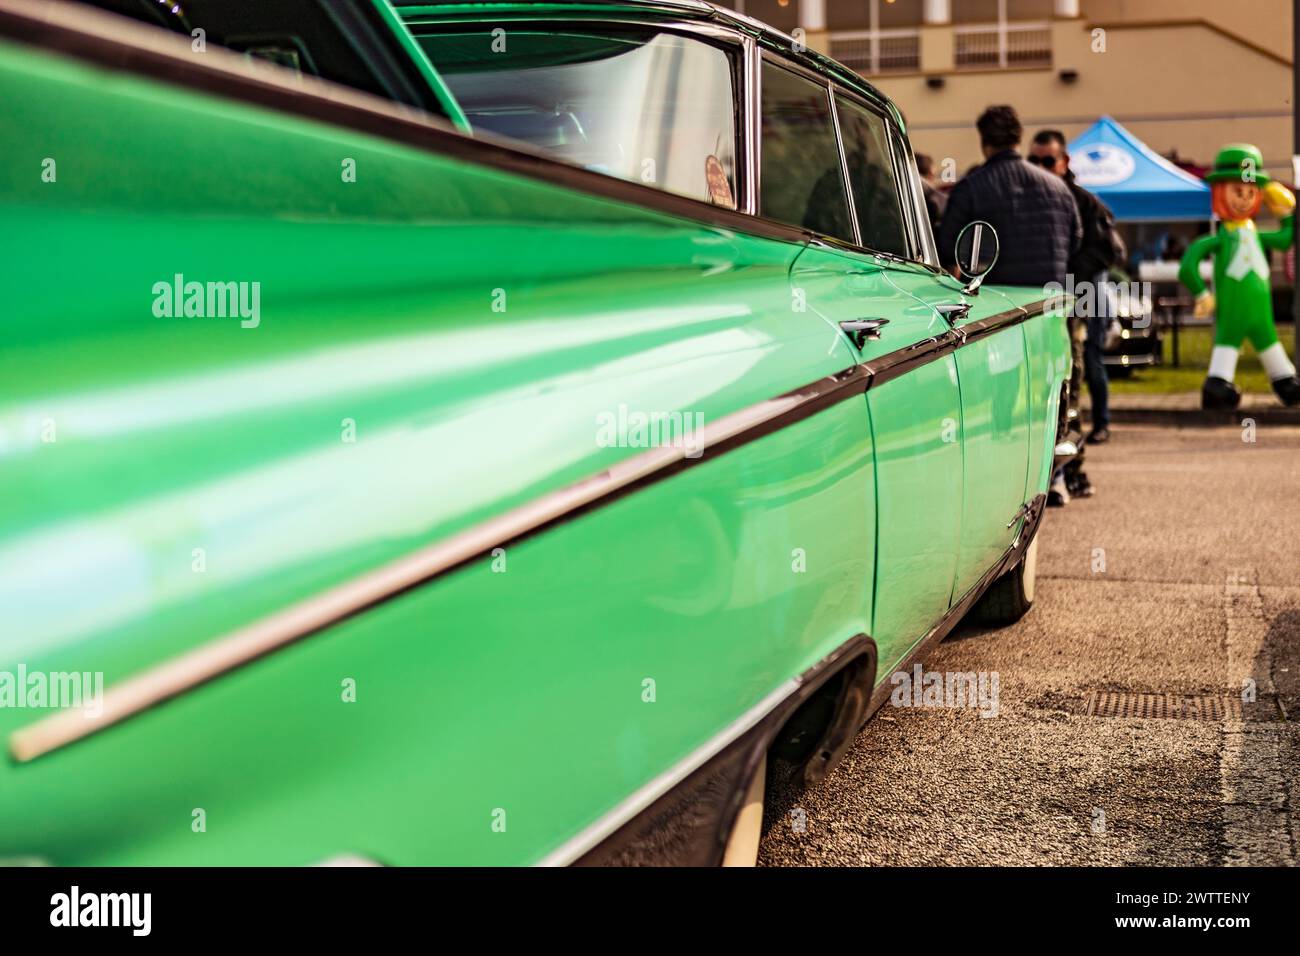 Exposé voiture américaine vintage lors d'un salon, capturant l'essence de l'excellence automobile classique. Banque D'Images